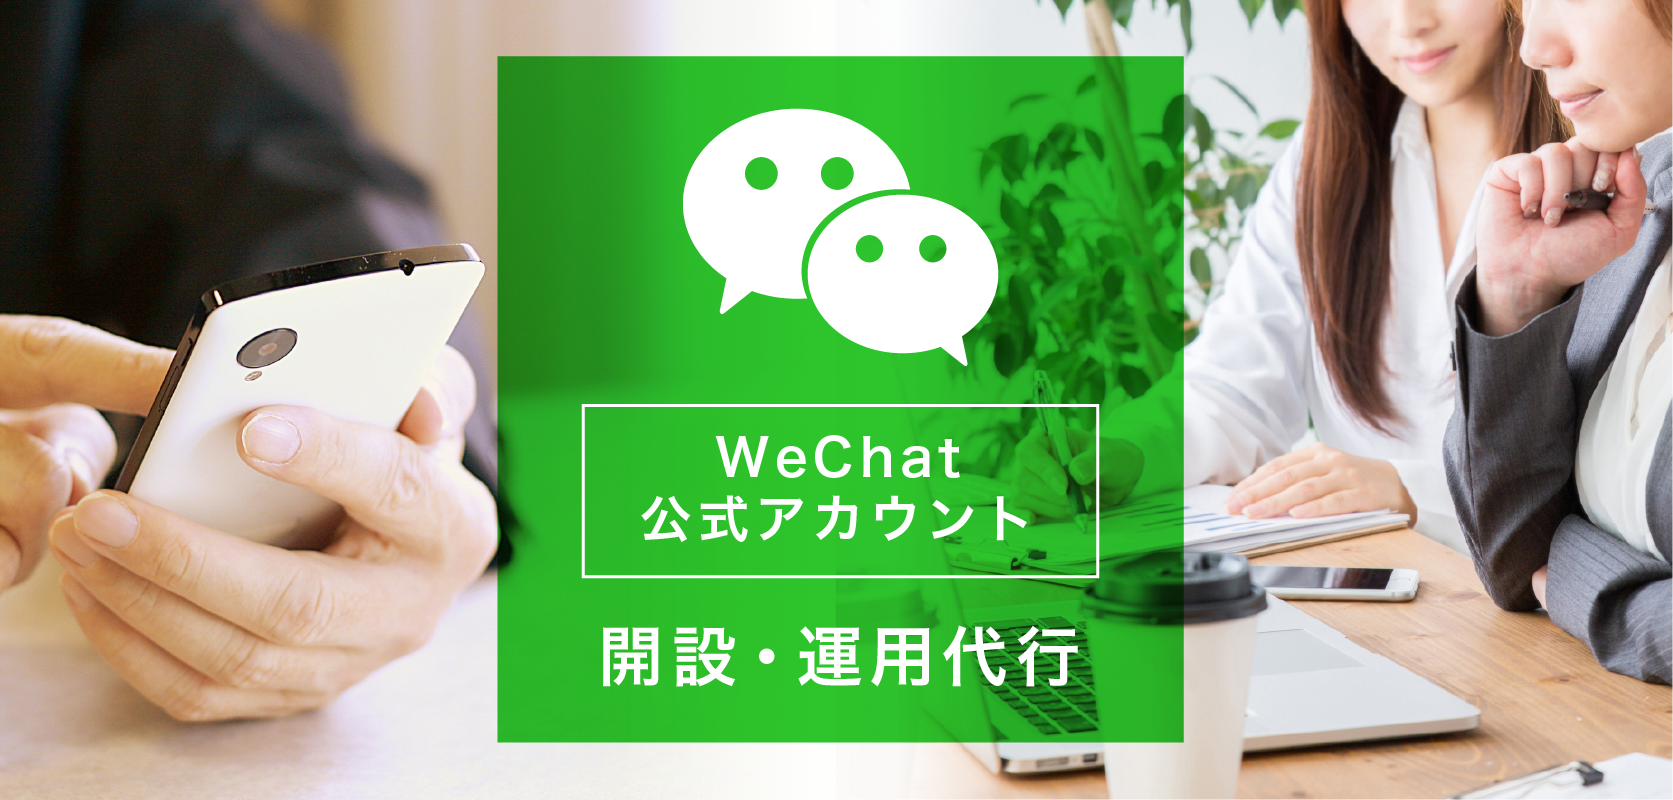 WeChat公式アカウントによるプロモーションを推進